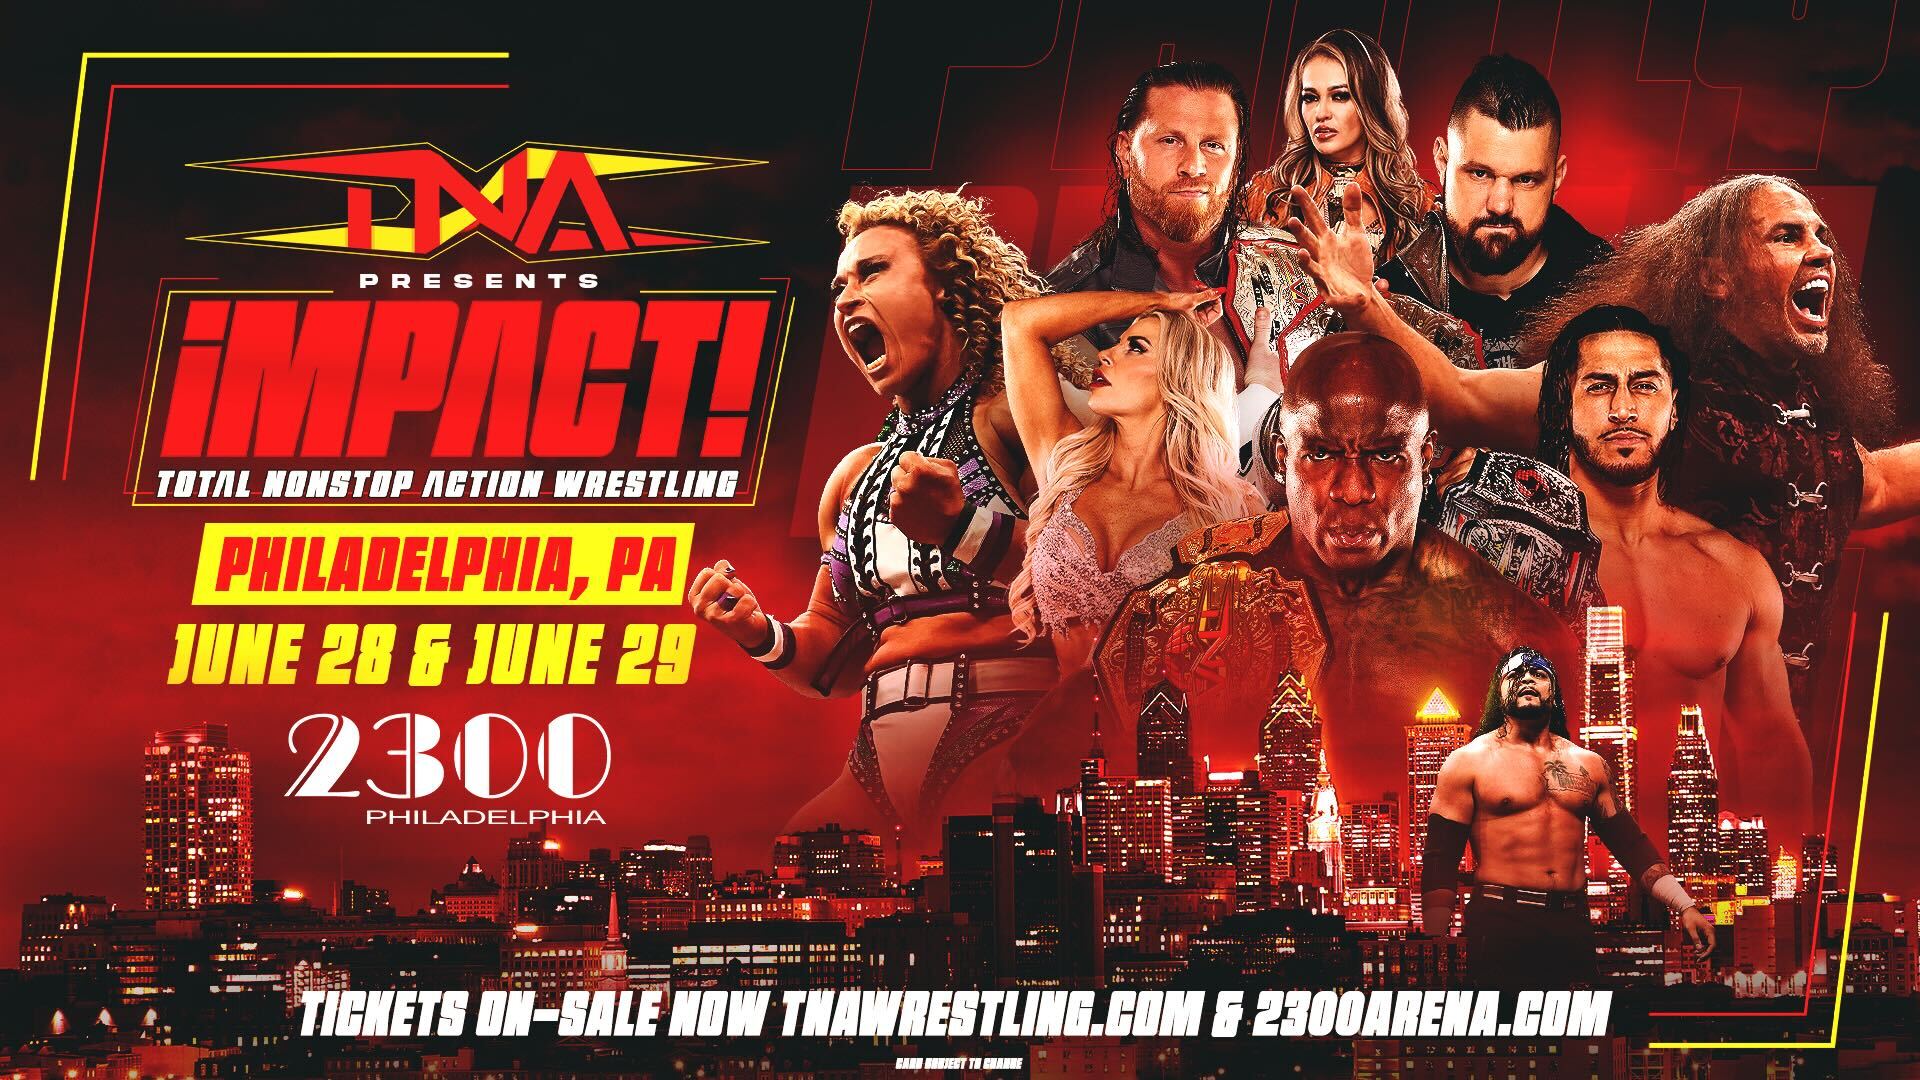 Friday & Saturday, June 28-29 – TNA Wrestling